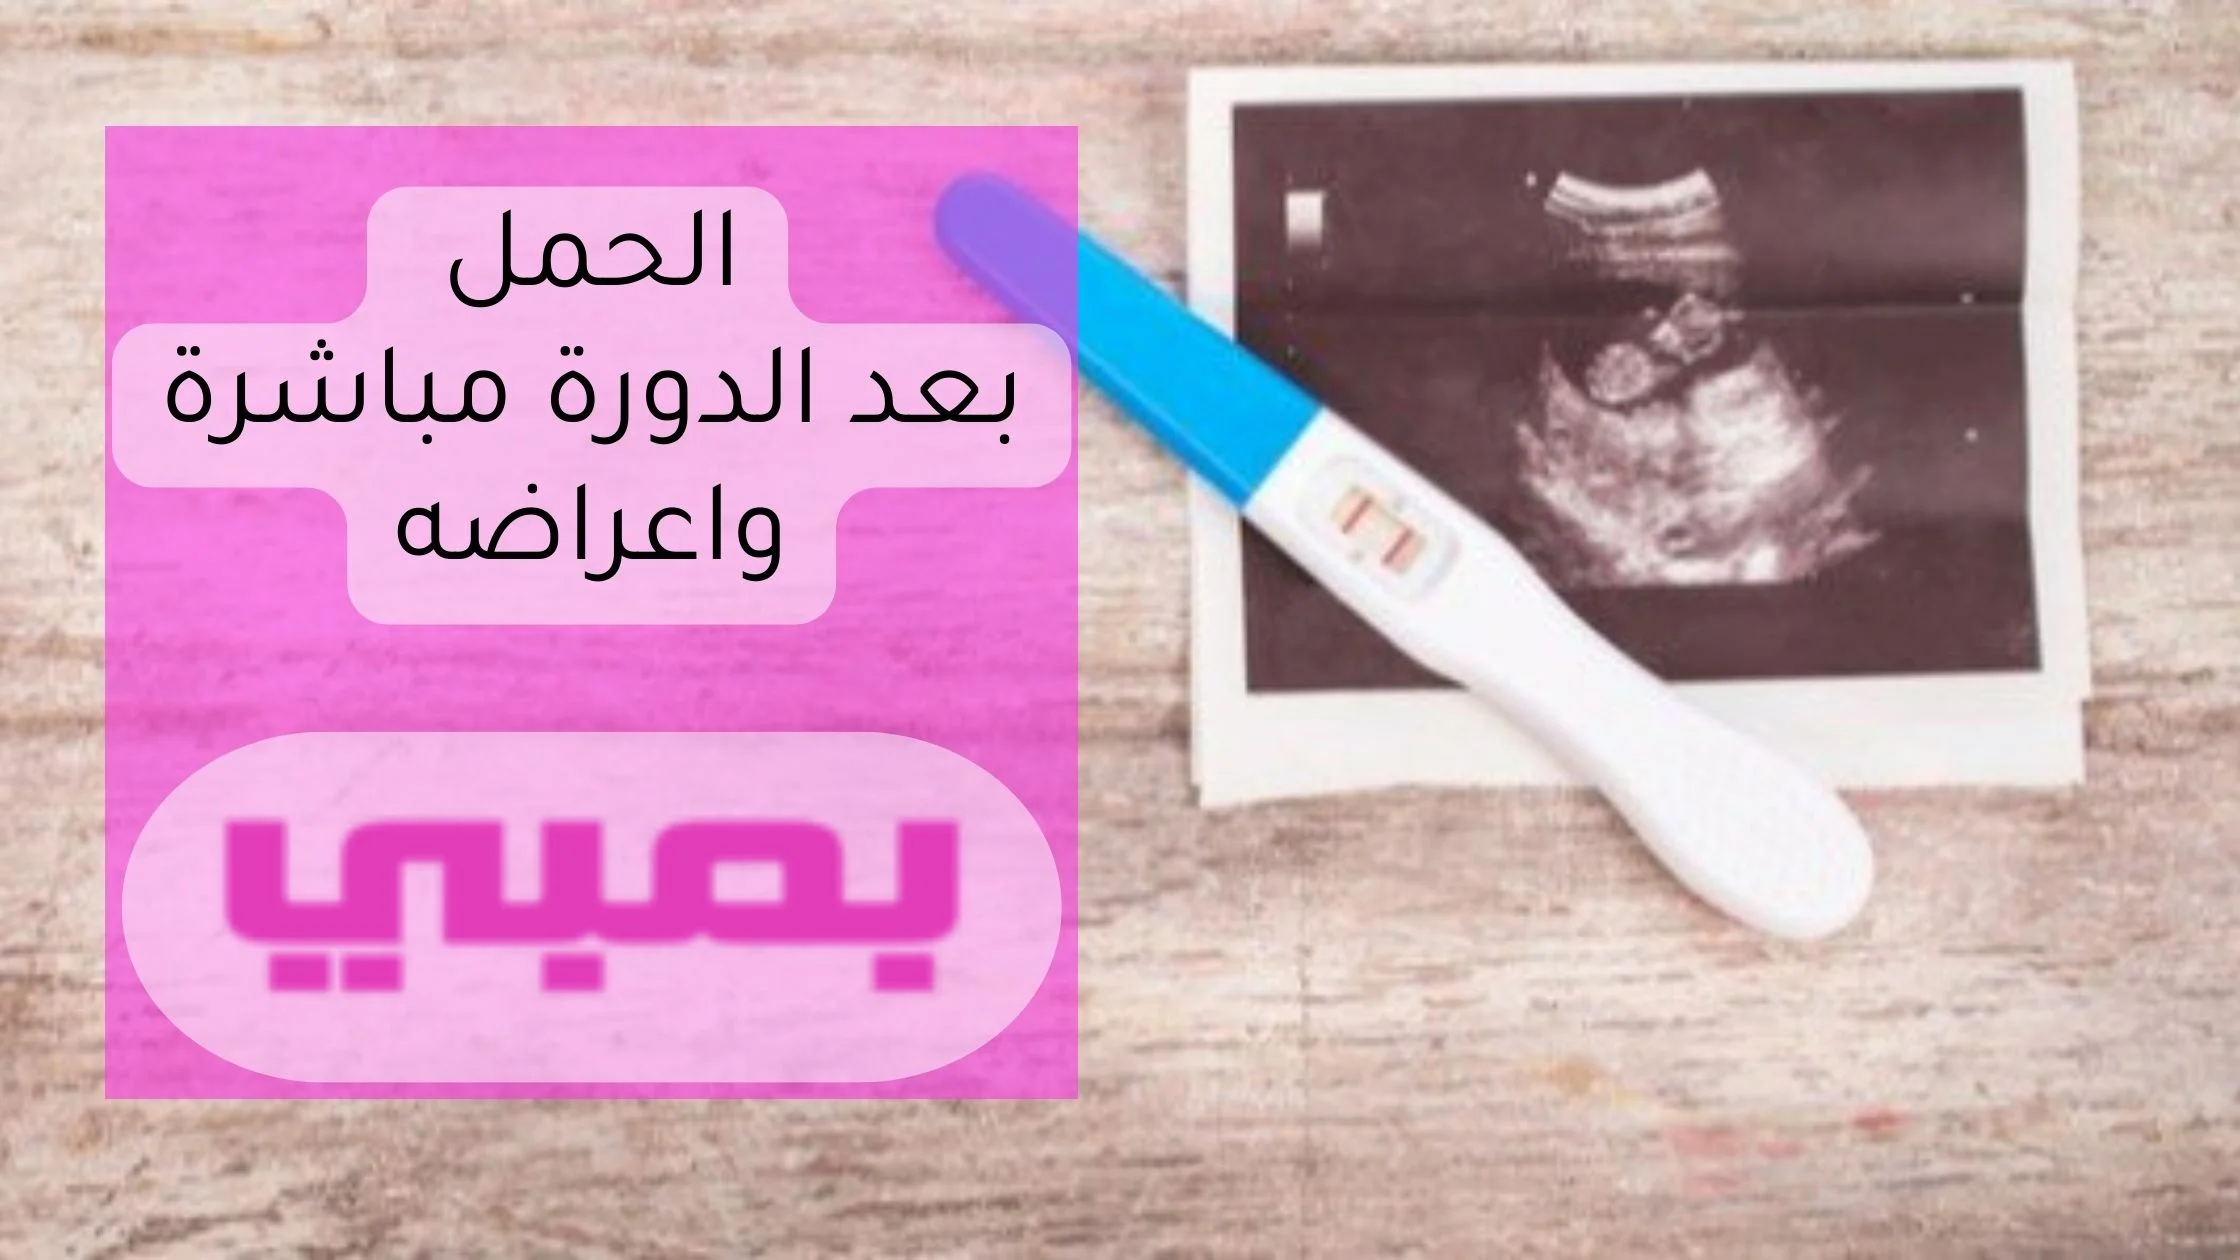 الحمل بعد الدورة مباشرة واعراضه